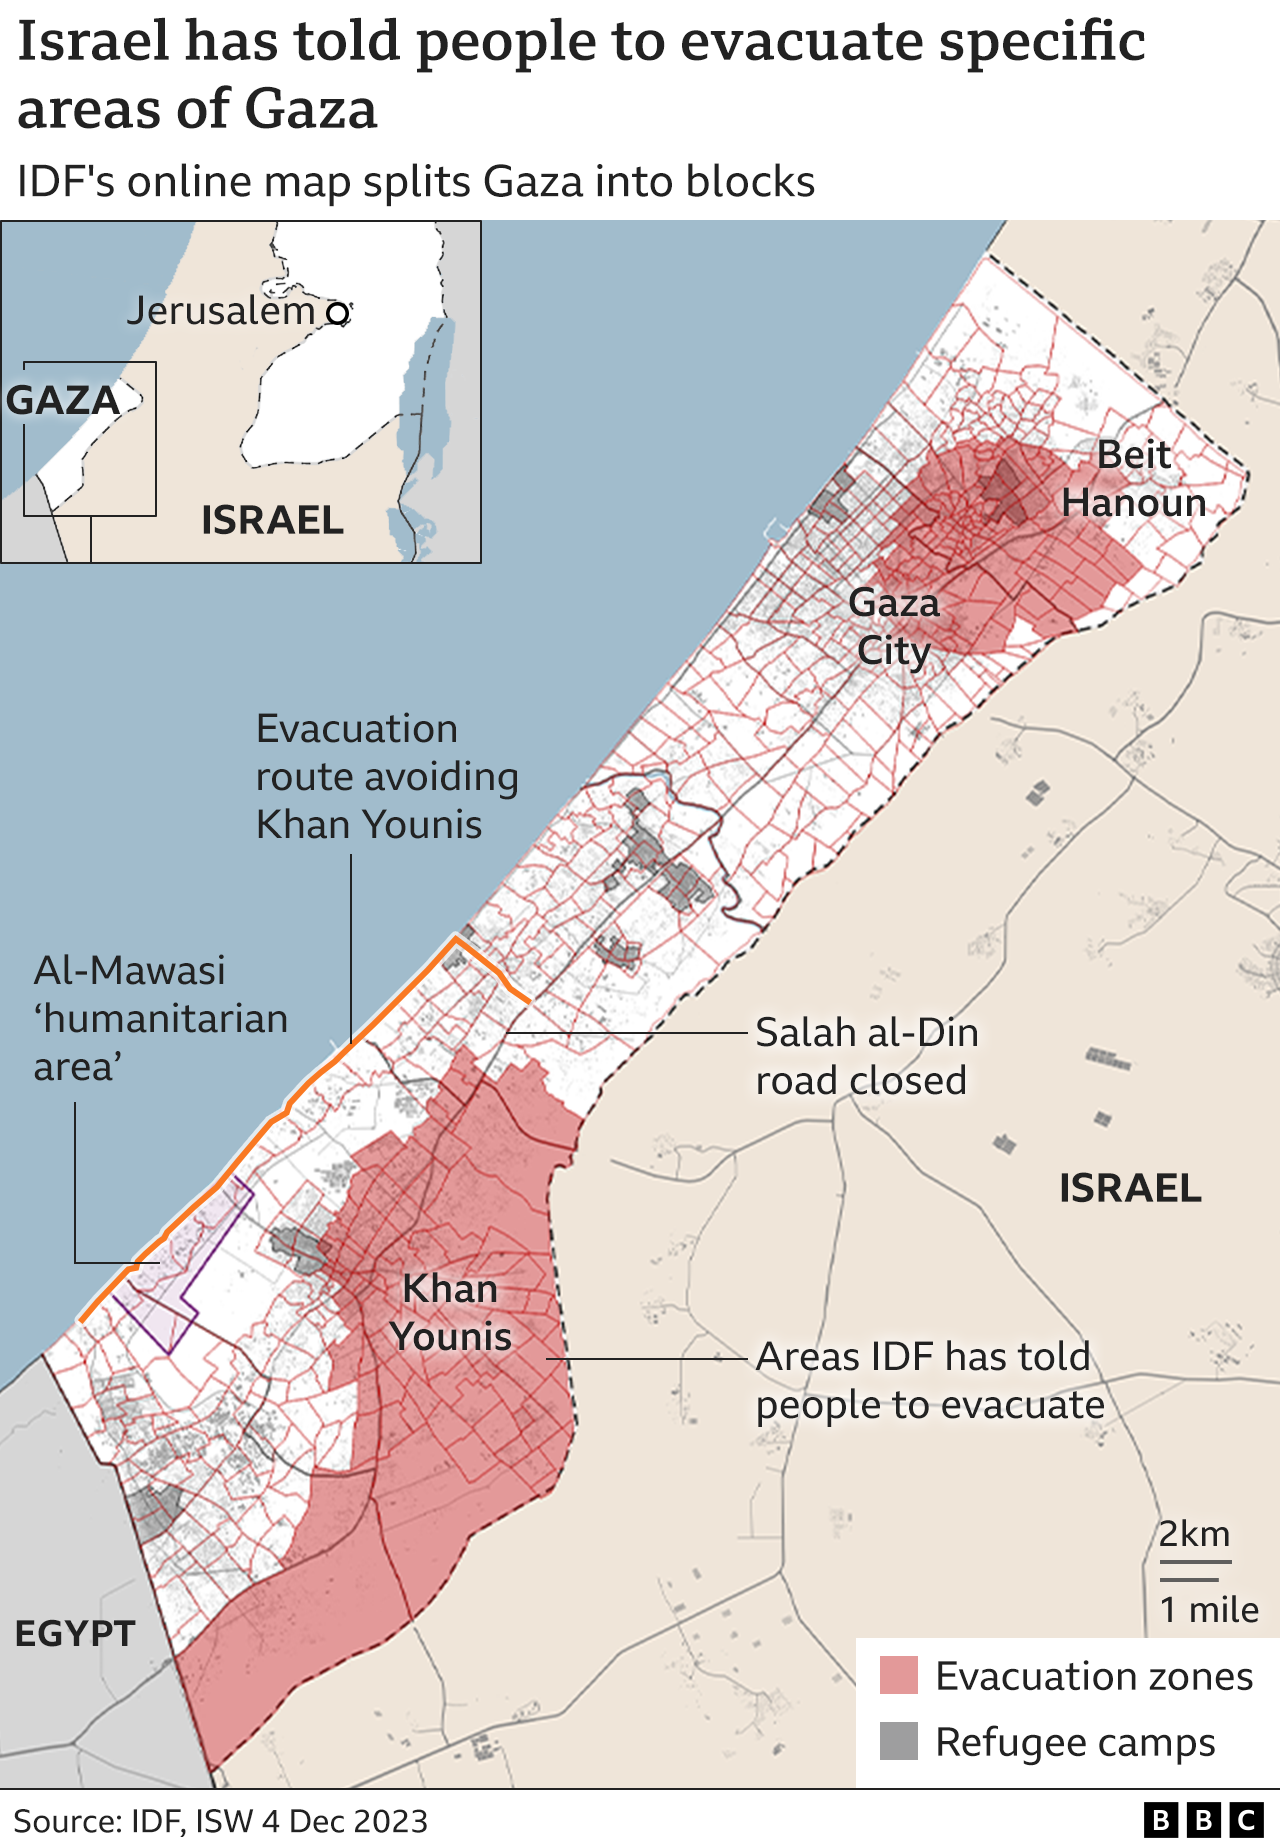 Israeli evacuation orders in effect in Gaza (4 December 2023)